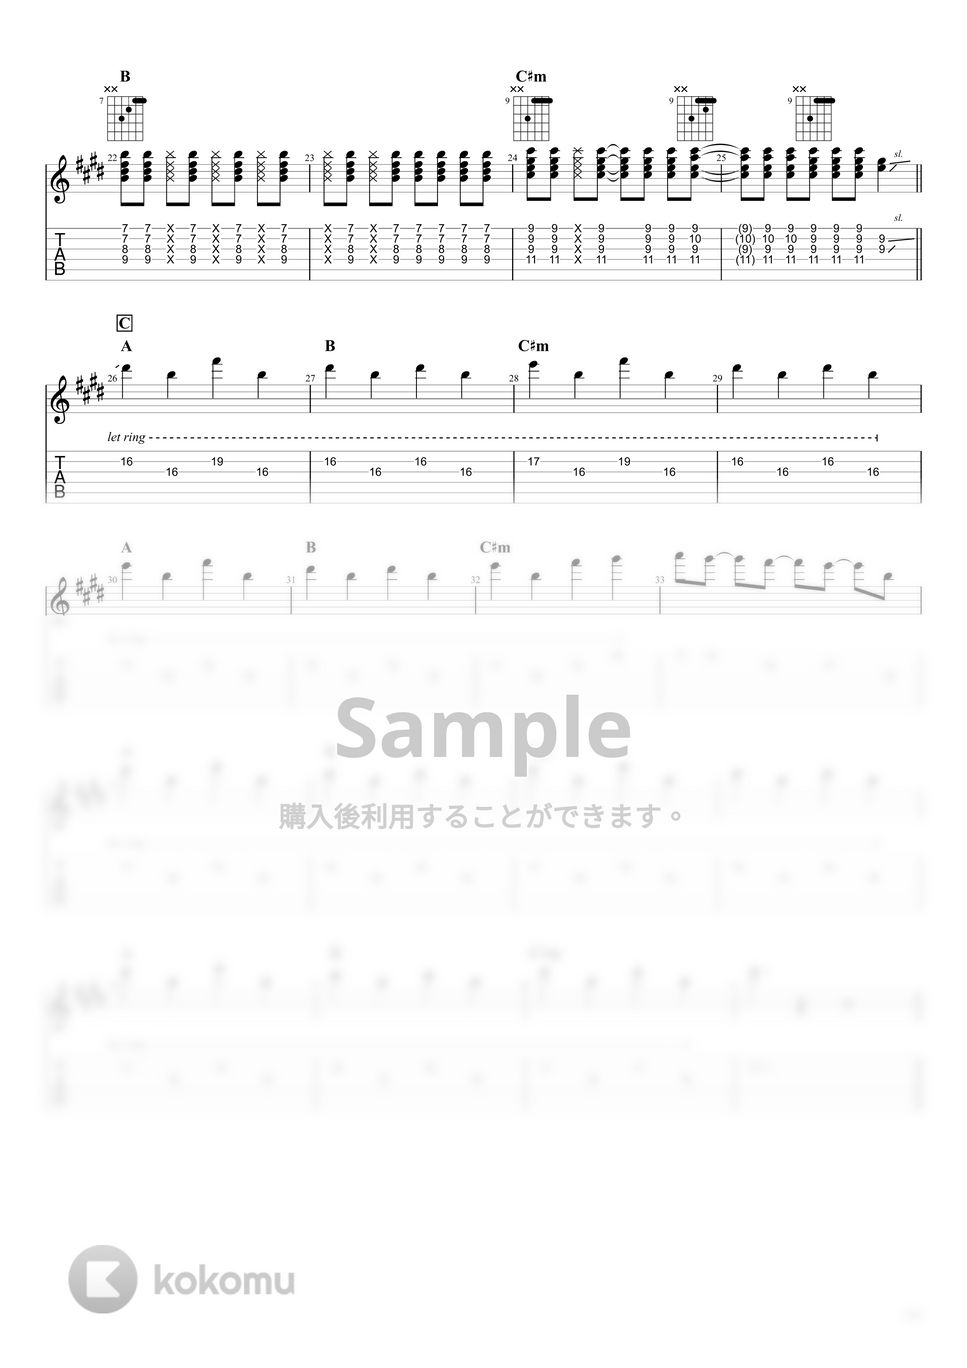 にしな - アイニコイ (ギター) by うつみ